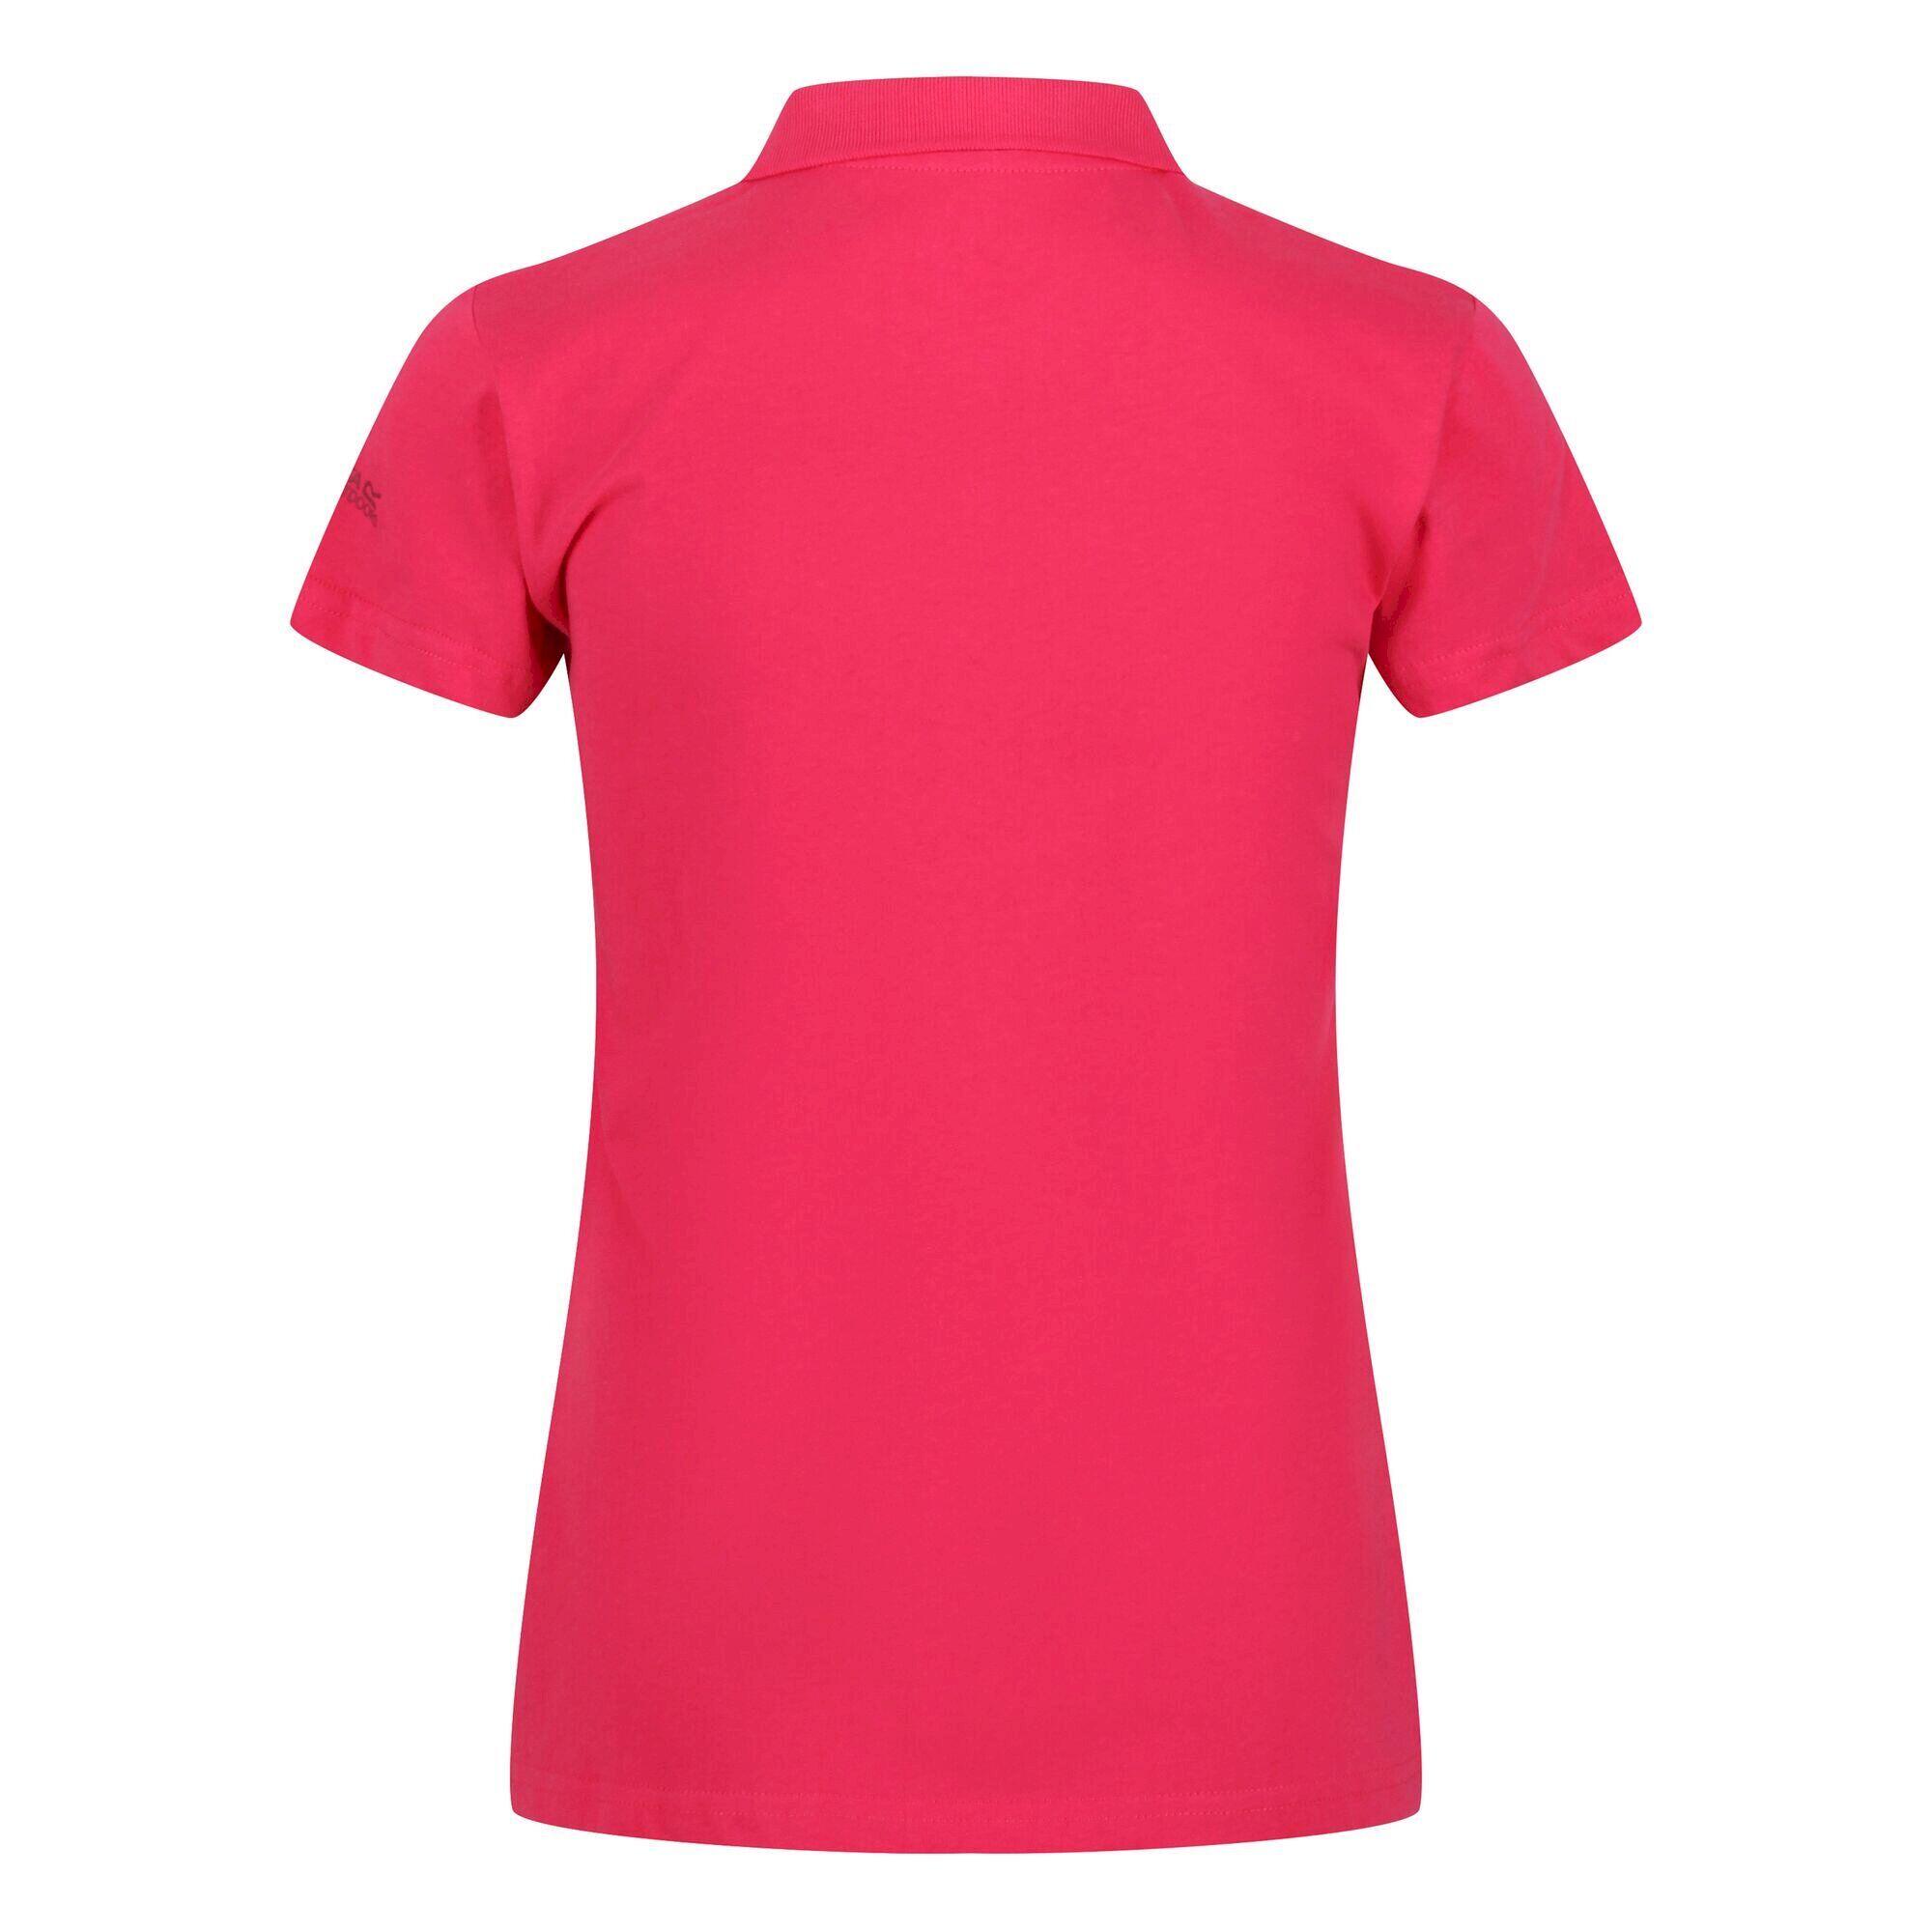 Womens/Ladies Sinton Polo Shirt (Rethink Pink) 2/5